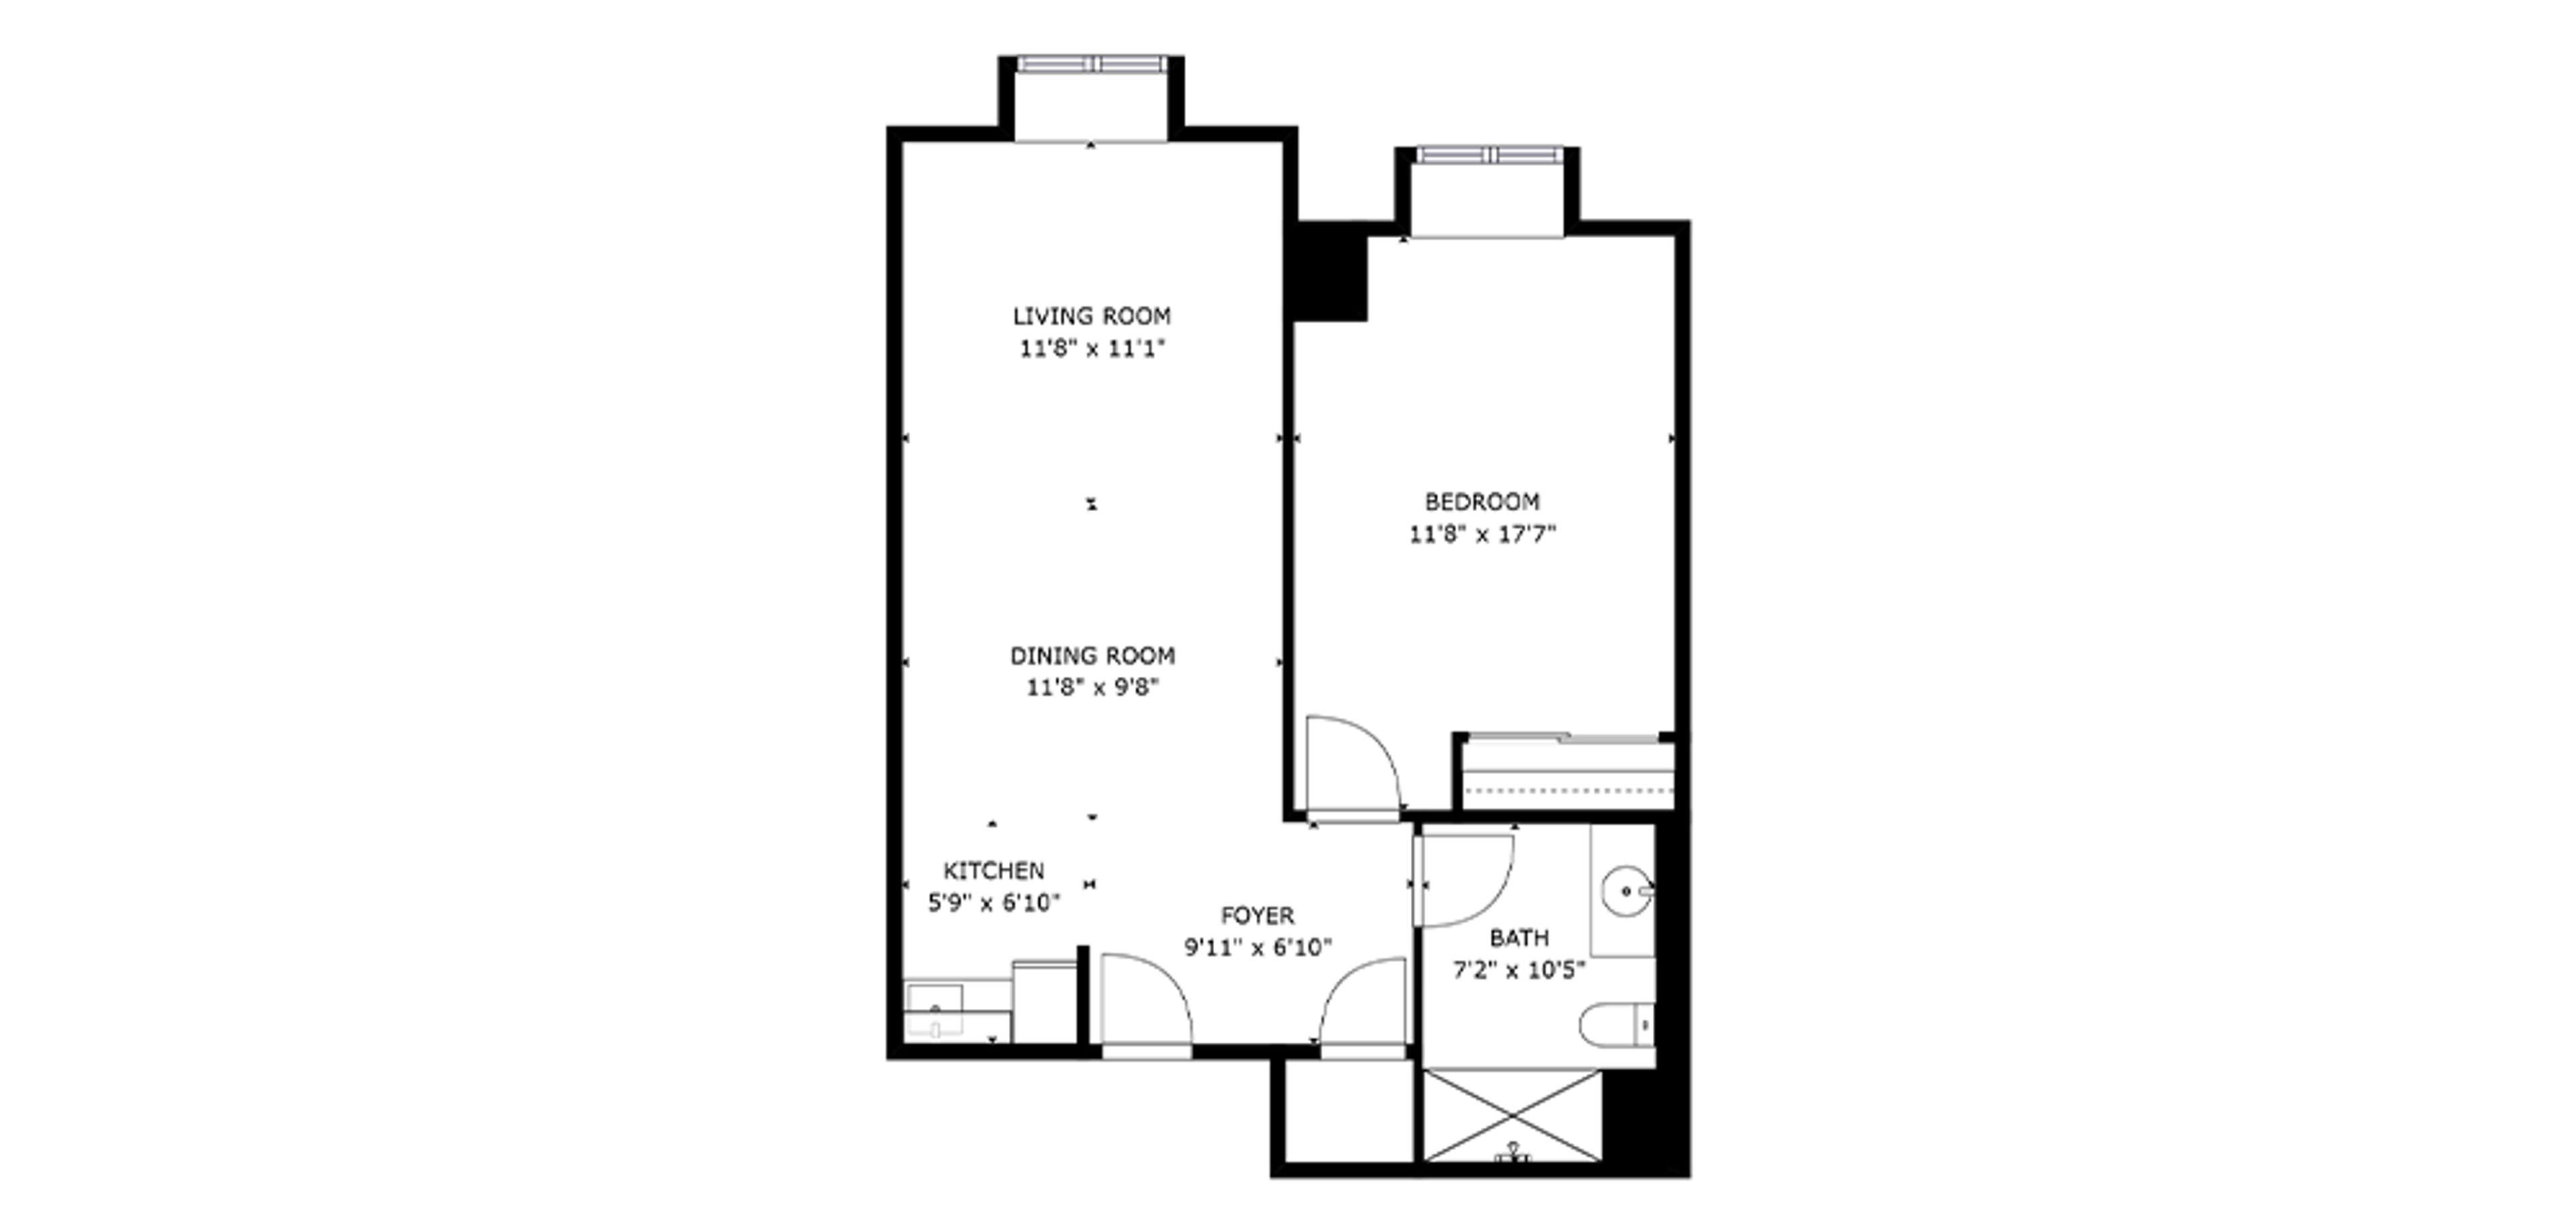 Birkdale Place Sample 1 Bedroom Plan D